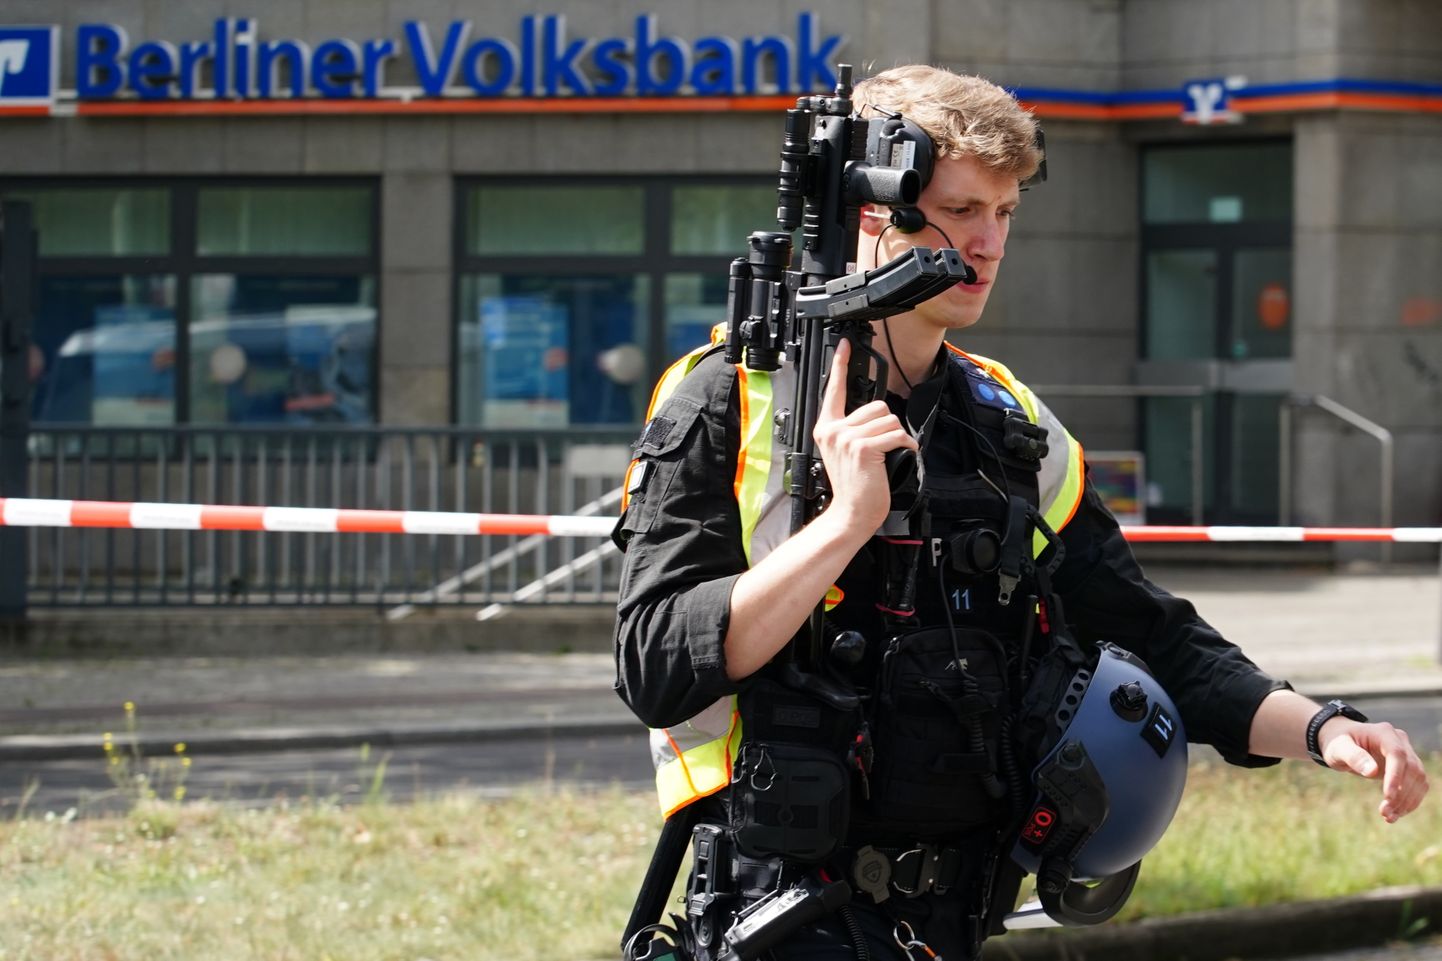 Relvastatud politseinik Berliini Volksbanki juures 4. august 2020.